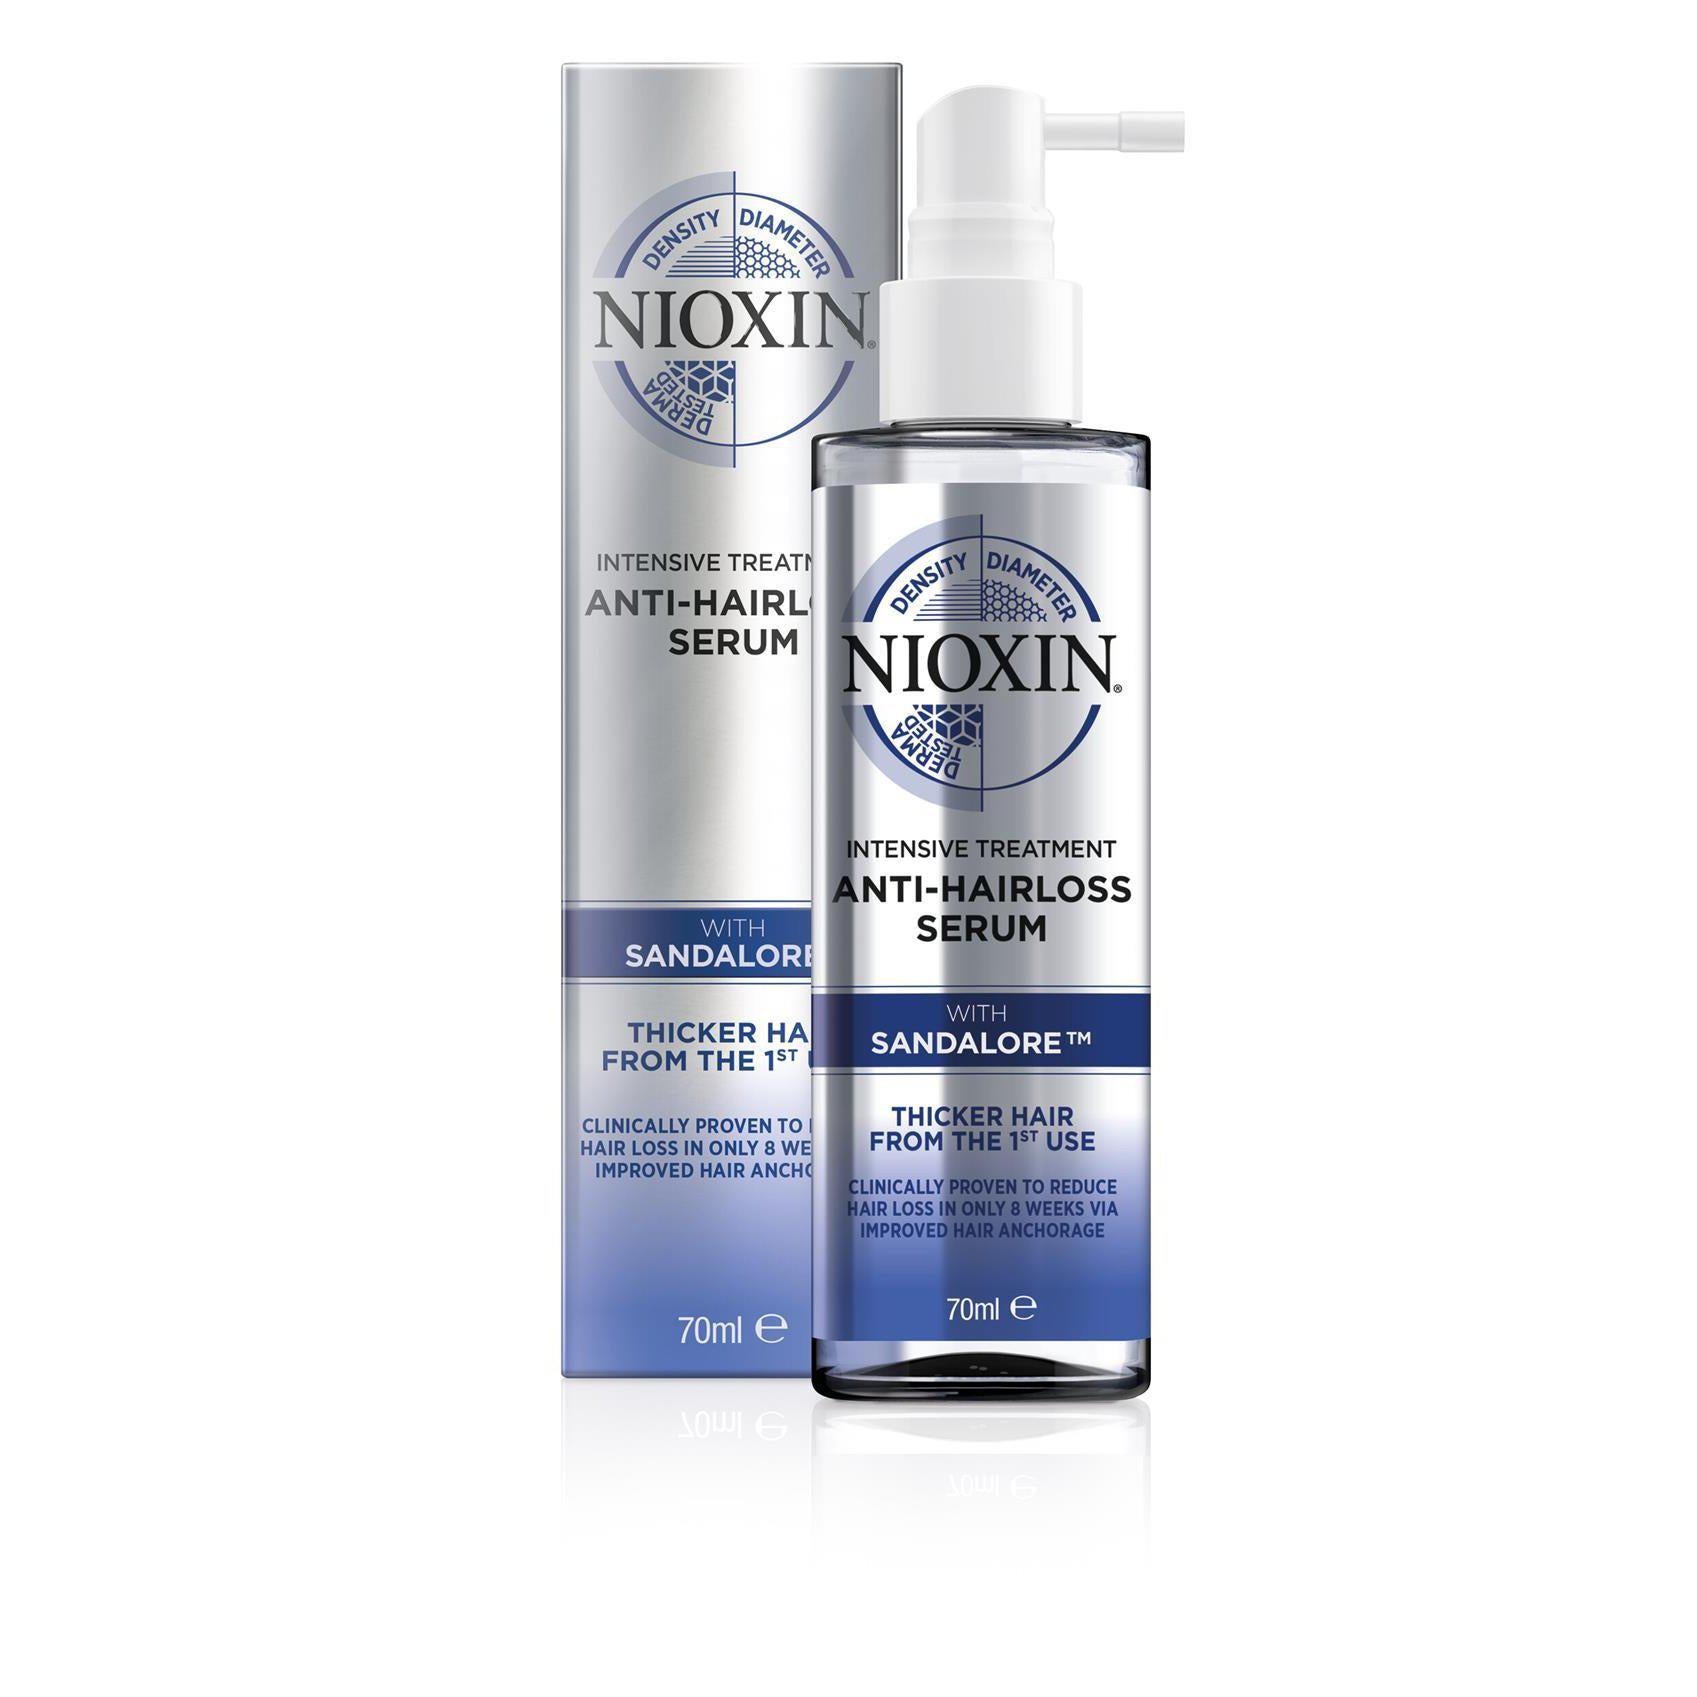 Nioxin anti-hairloss serum 70ml